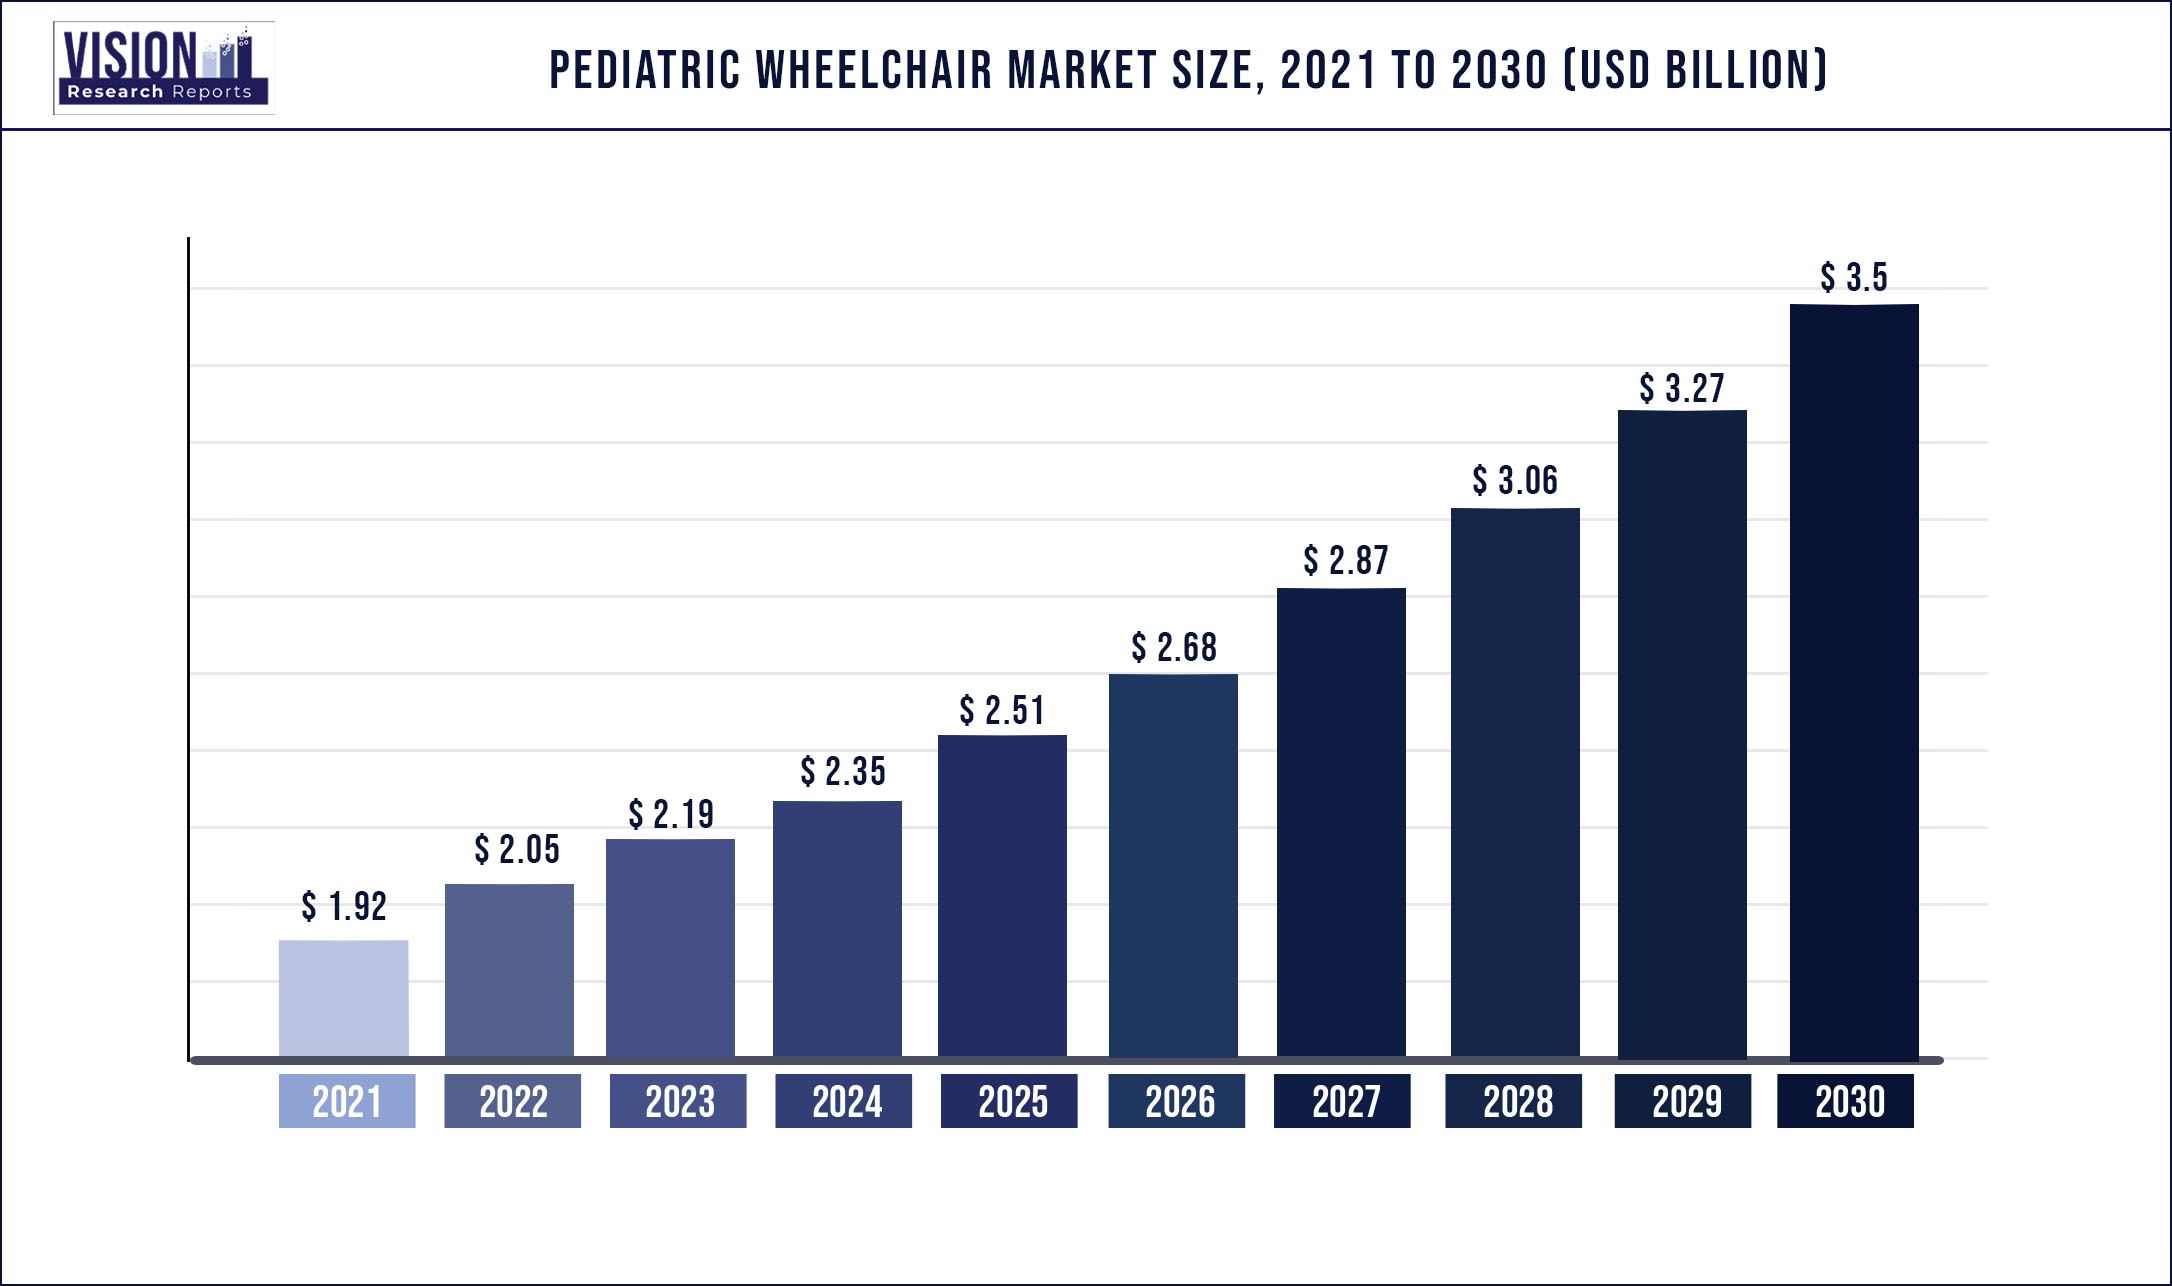 Pediatric Wheelchair Market Size 2021 to 2030